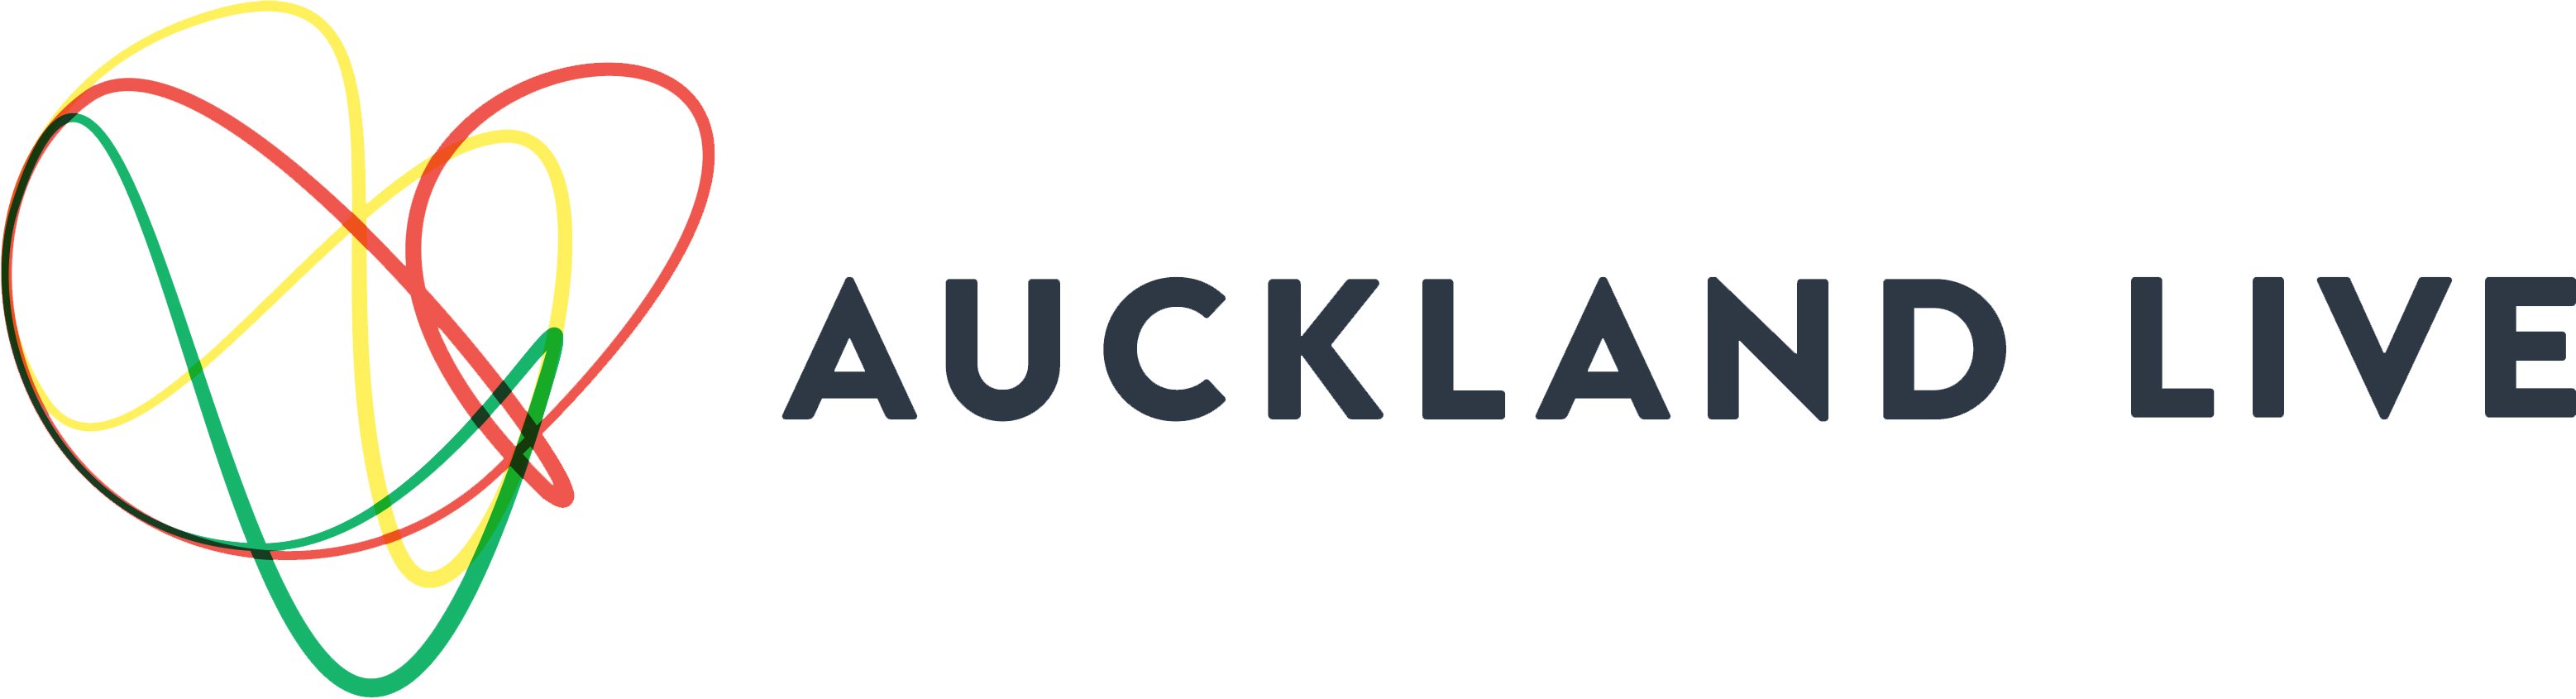 Auckland Live logo